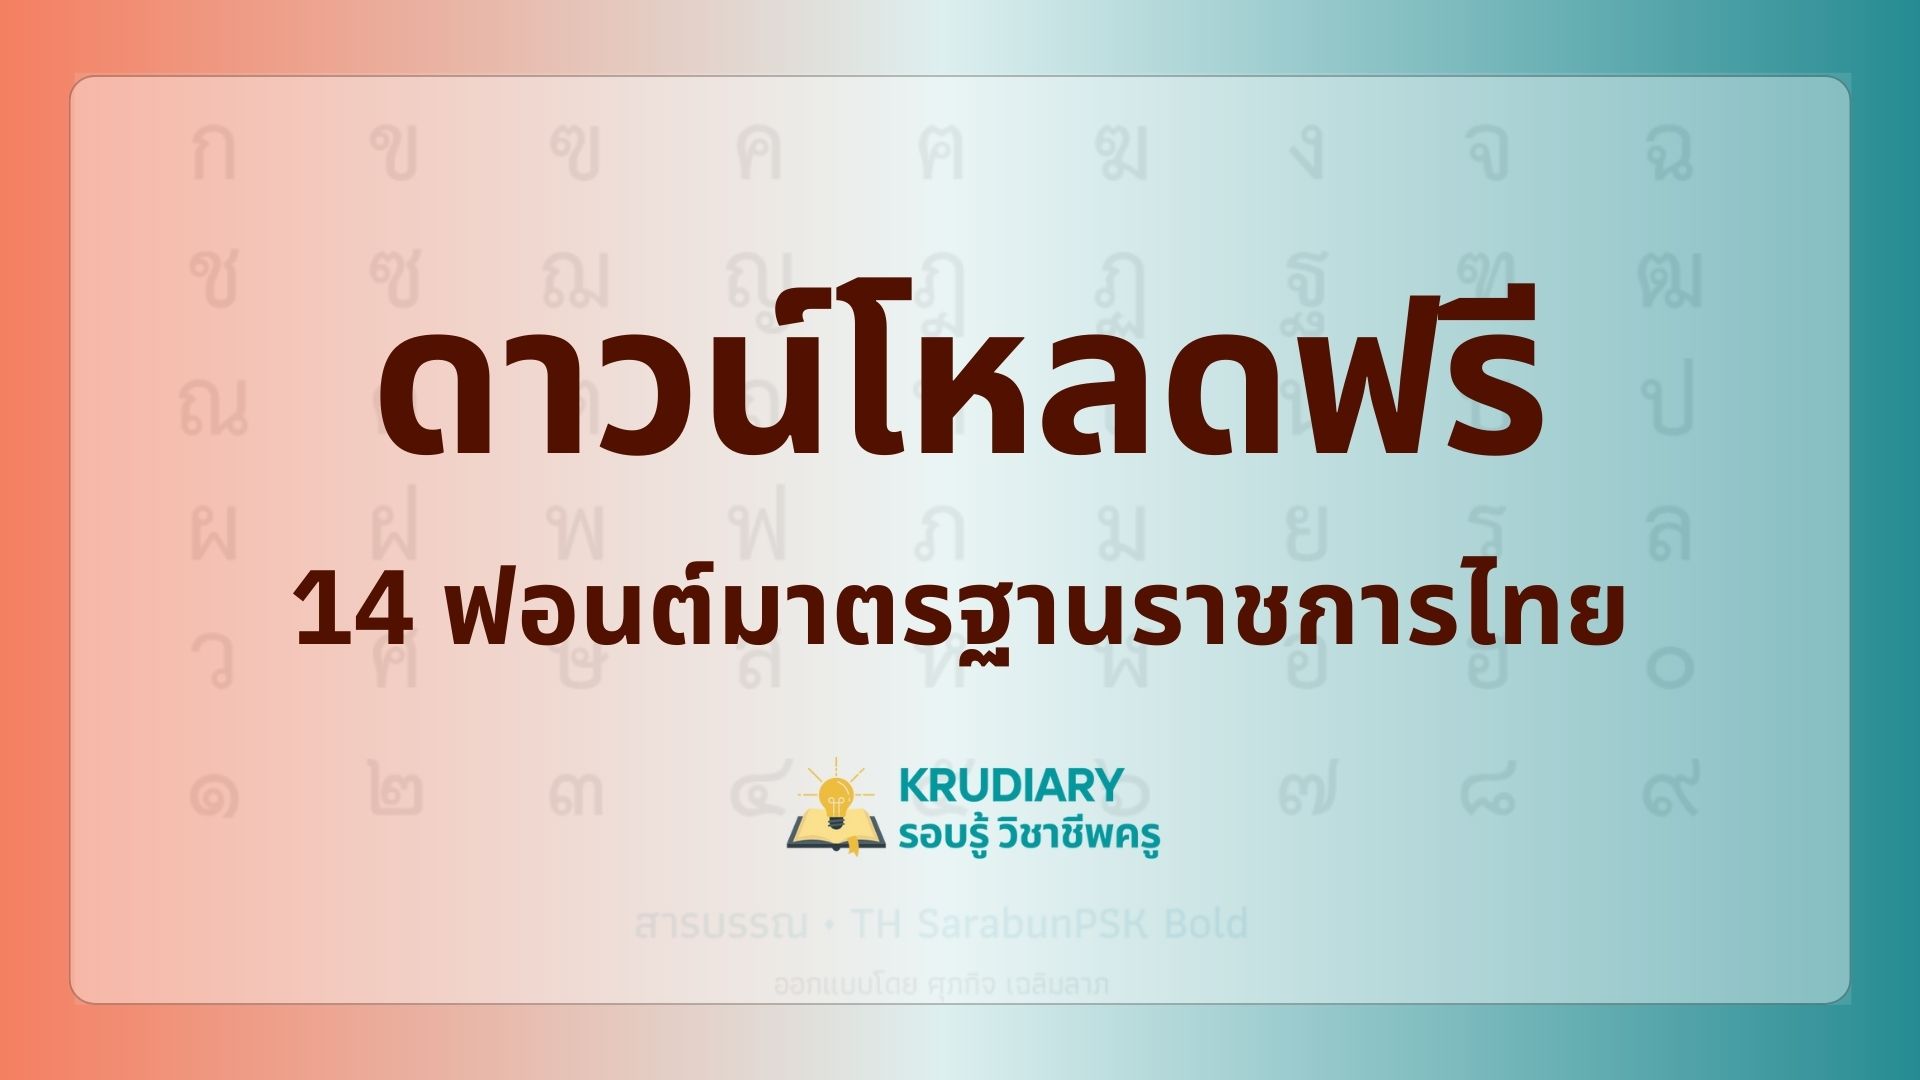 ดาวน์โหลดฟรีและติดตั้ง 14 ฟอนต์ราชการ TH Sarabun psk, new ฟอนต์มาตรฐานราชการไทย